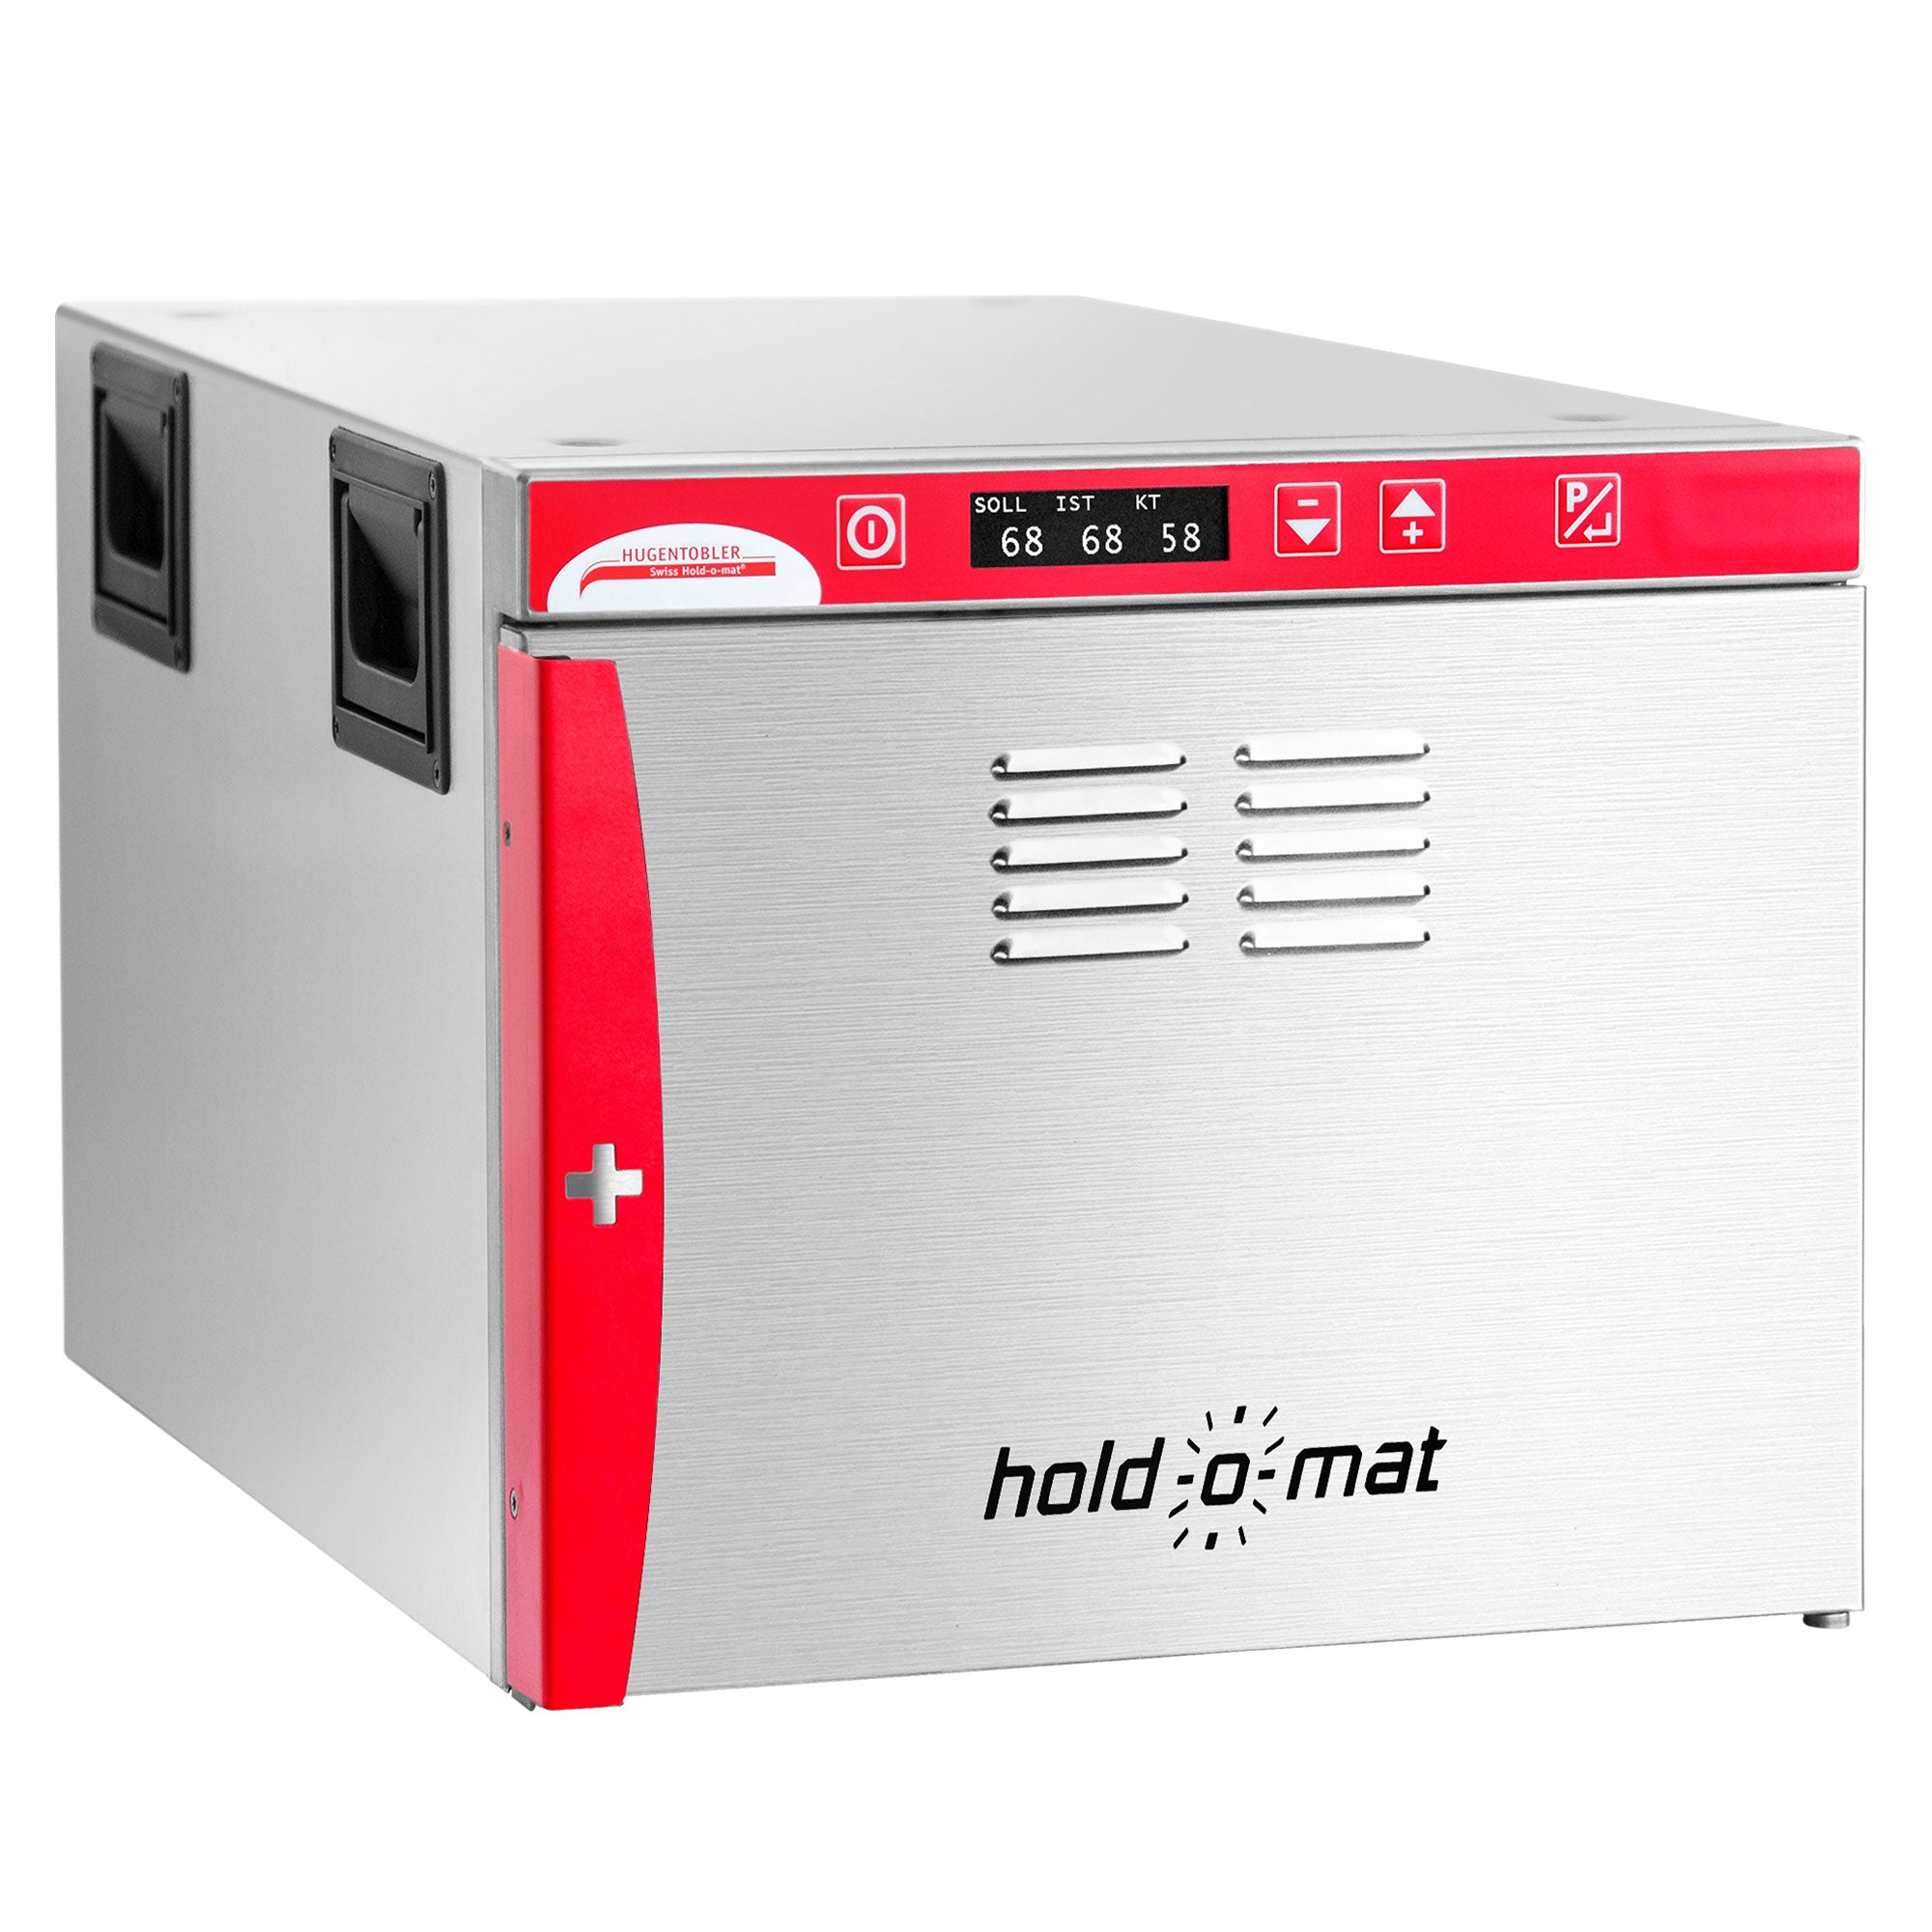 HUGENTOBLER | Hold-O-Mat 311 - Lav koge- og varmeenhed